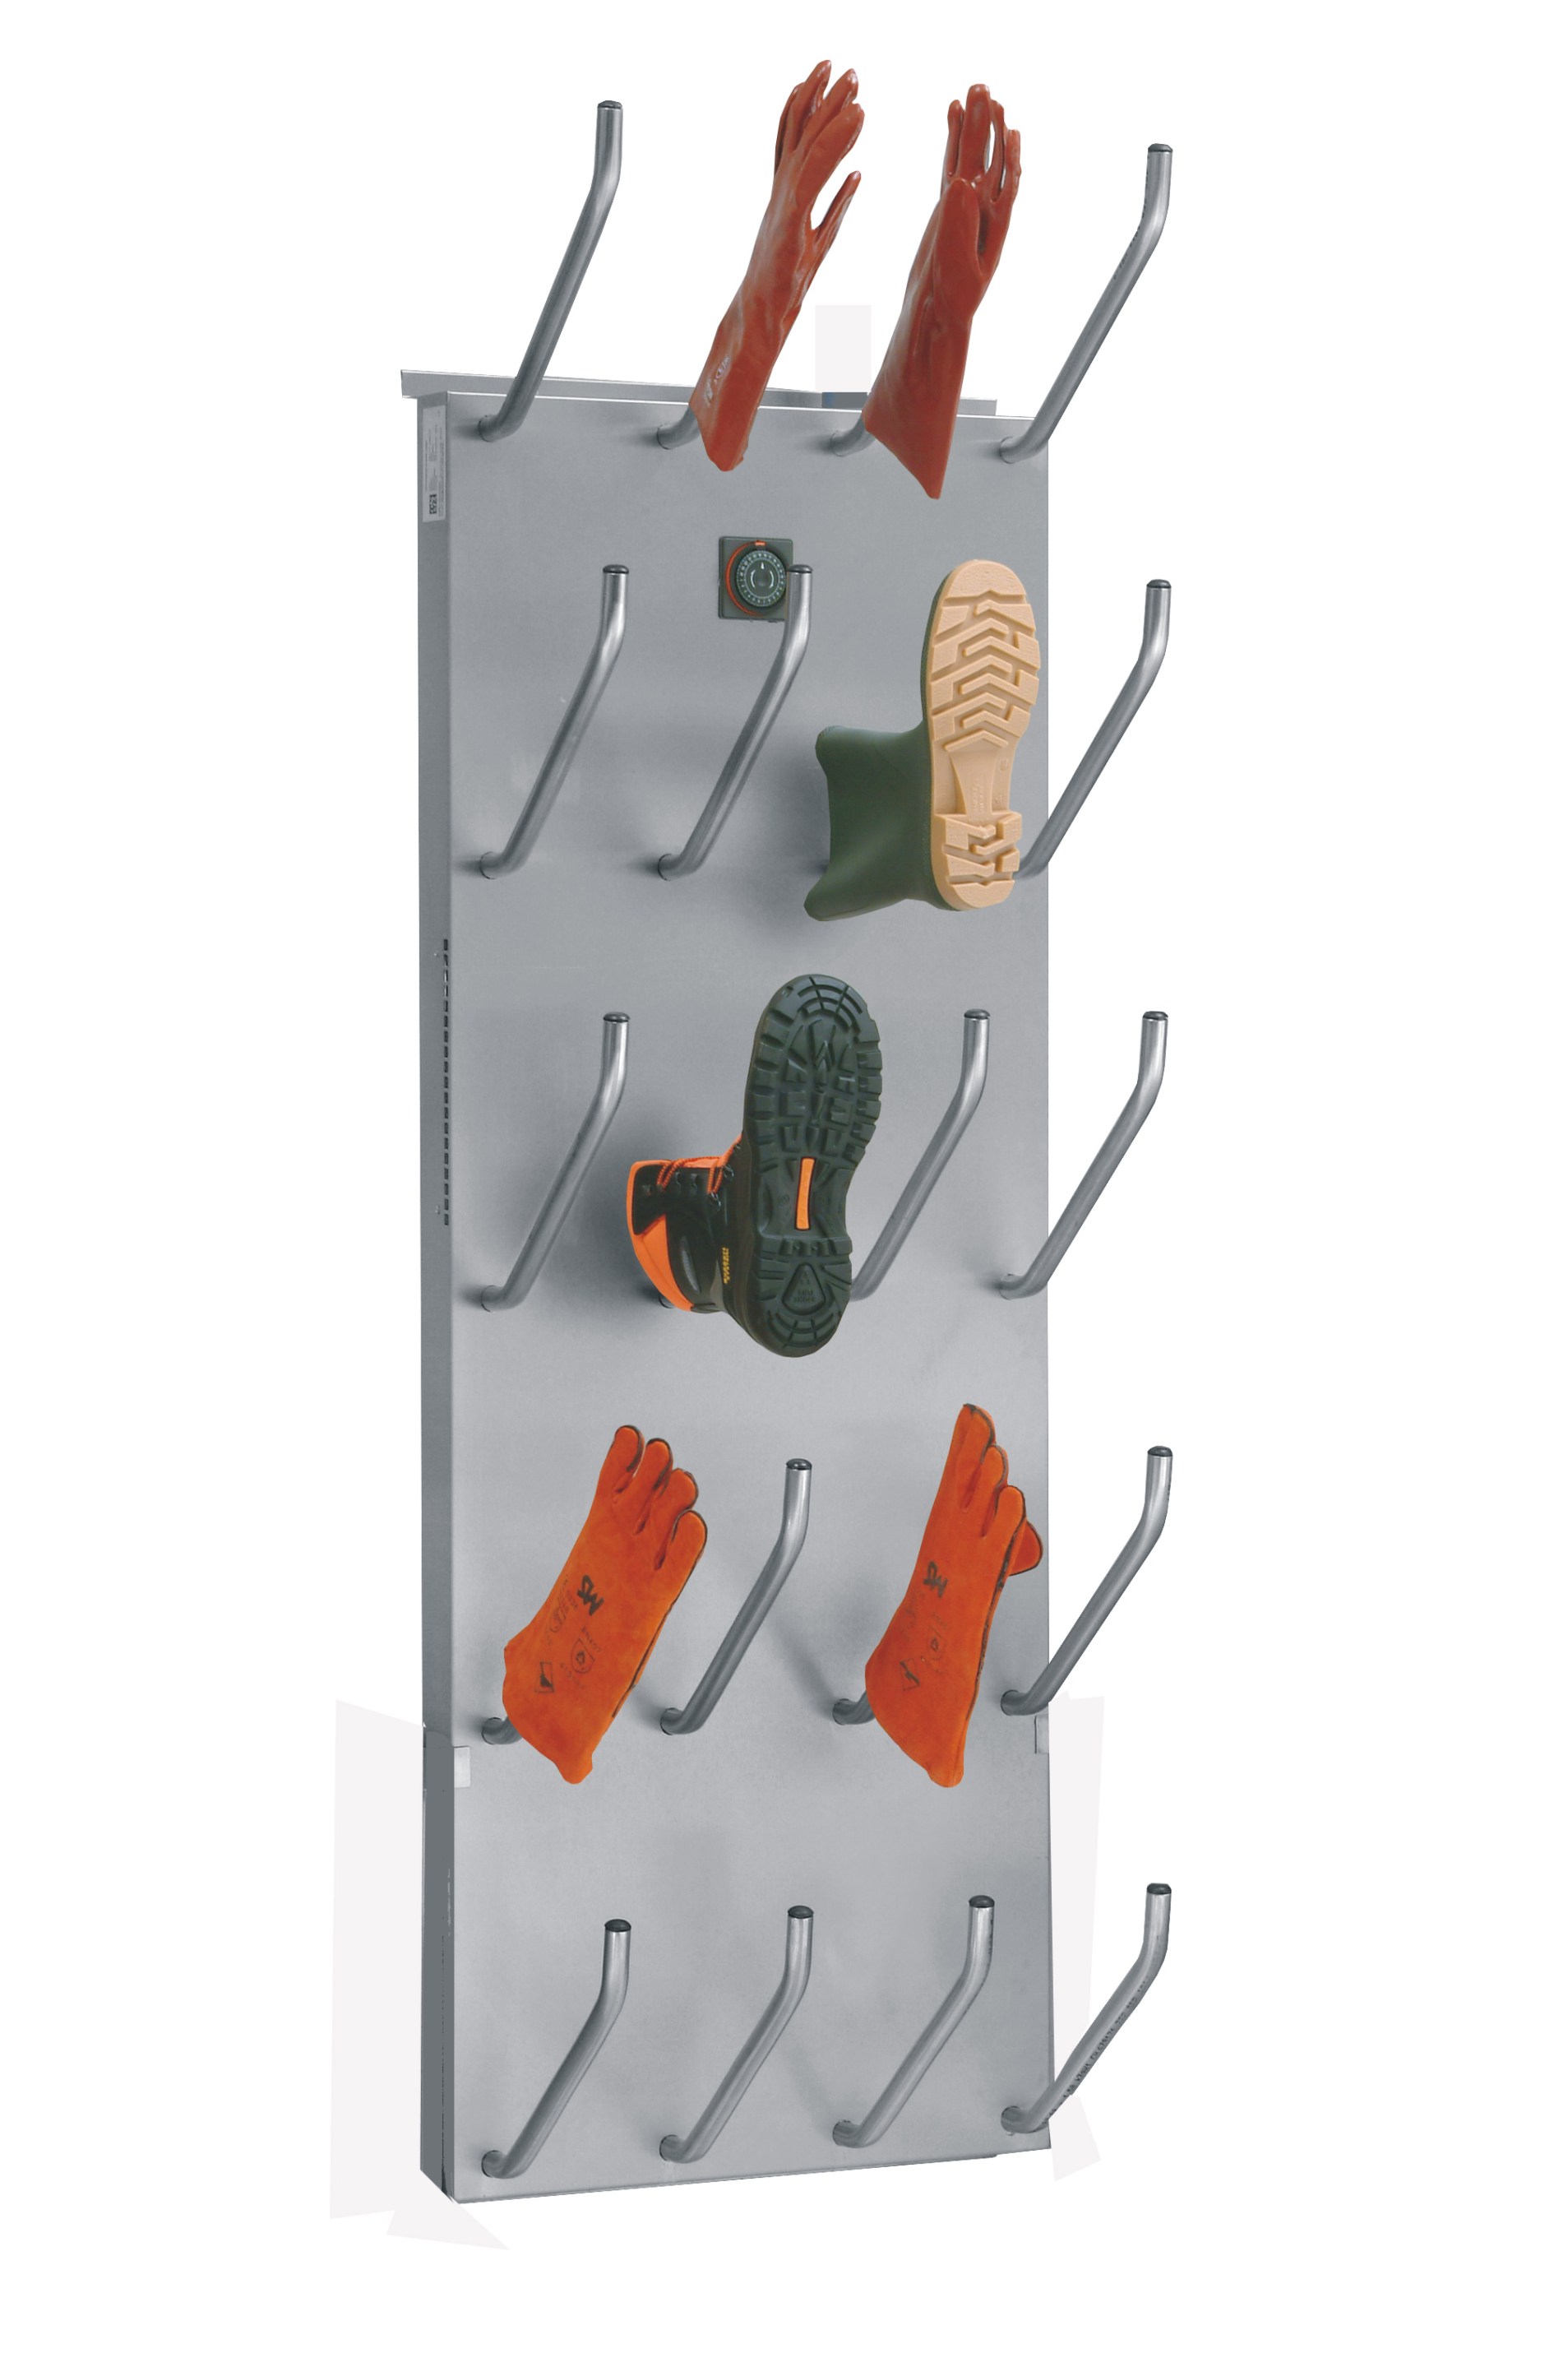 Asciugare Scarpe, Stivali, Scarponi e Guanti - Mistral 10 - Collini Sistemi  Material Handling